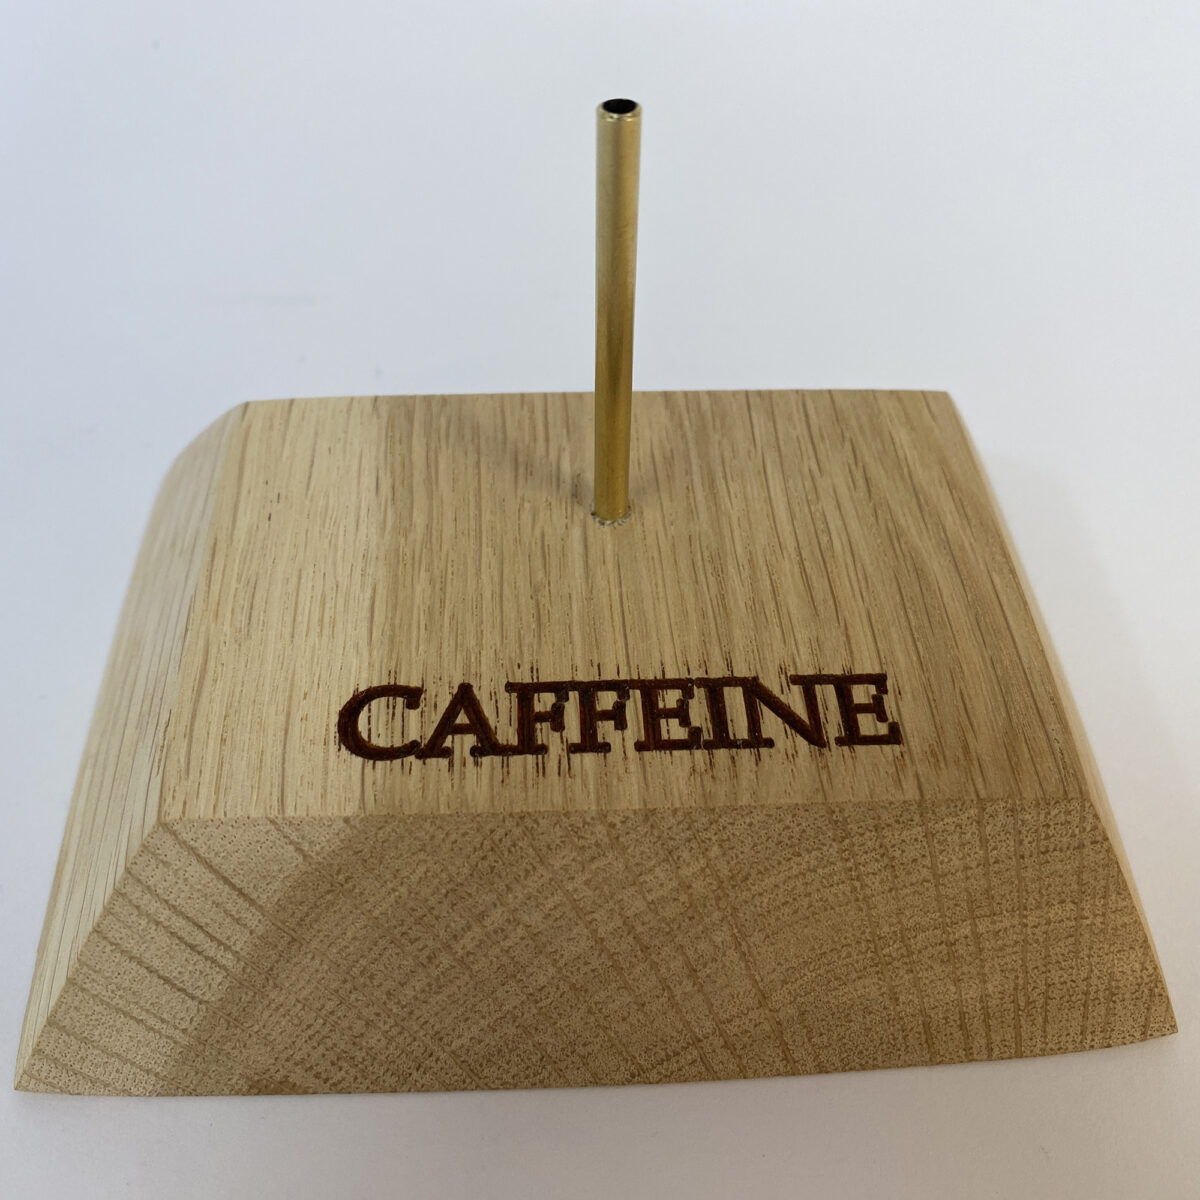 Caffeine molecule model